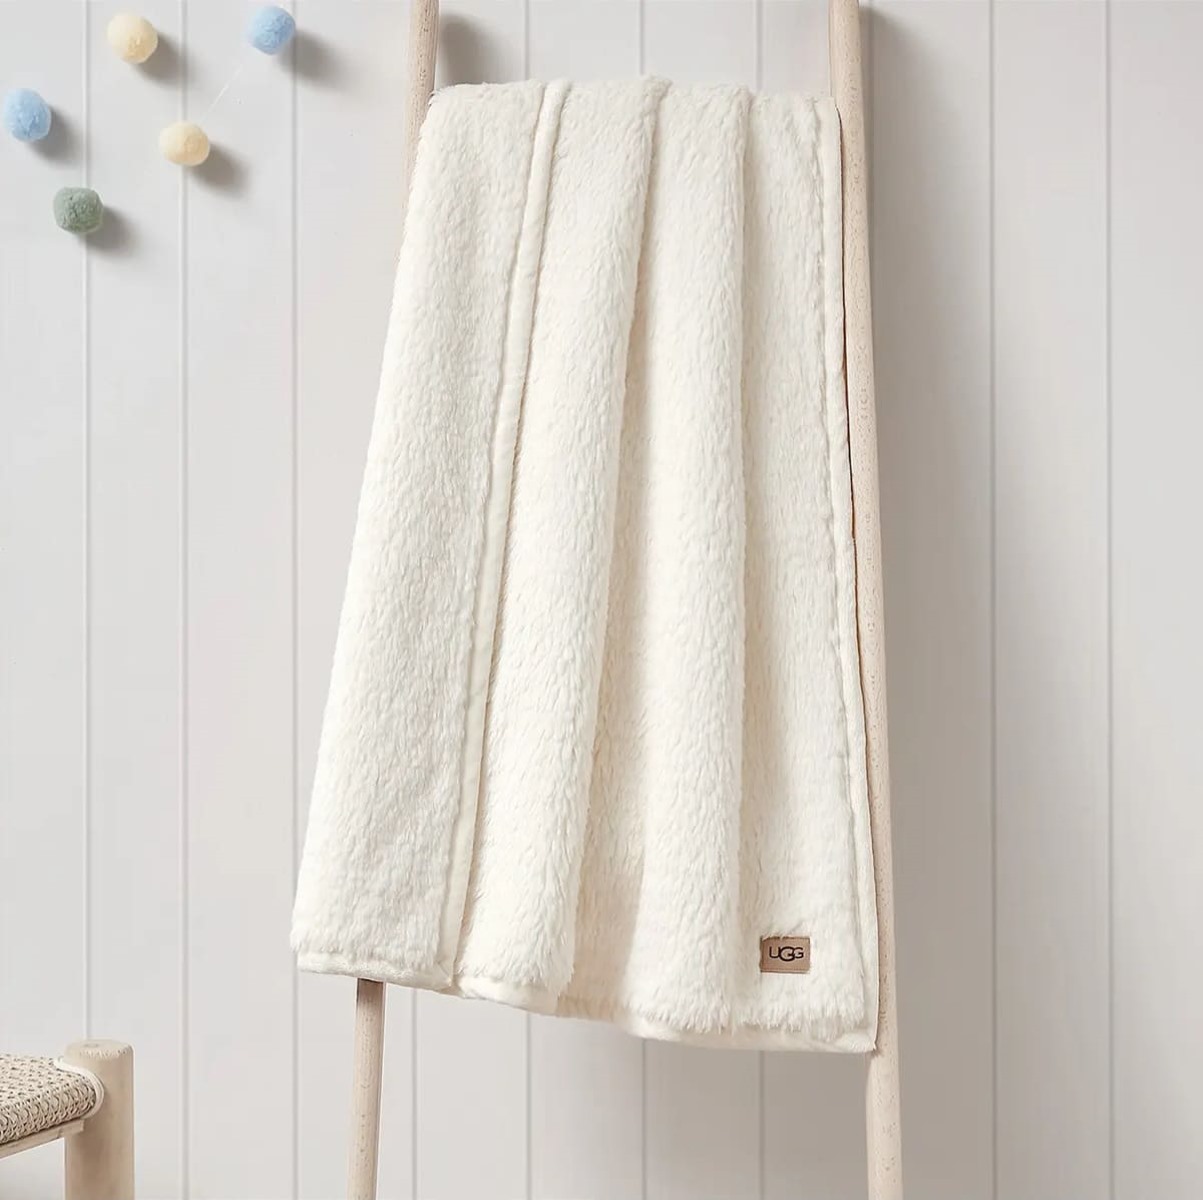 UGG, Bath, Ugg Bundle Of 3 Towels